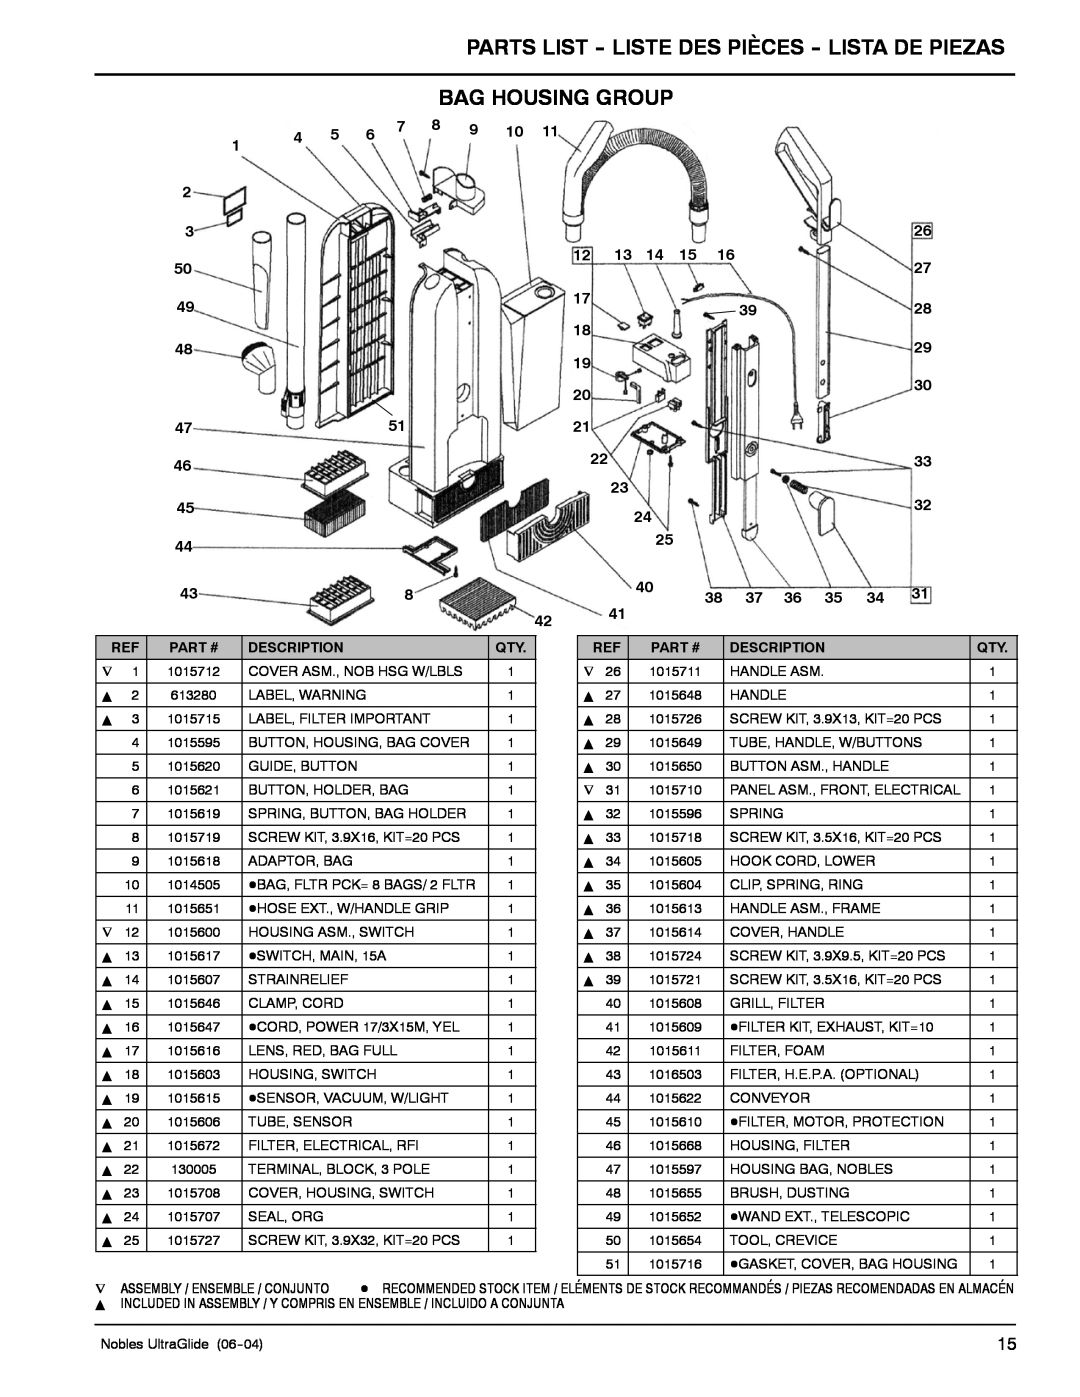 Nilfisk-ALTO 614219, 614222, 614221 Parts List - Liste Des Pièces - Lista De Piezas, Bag Housing Group, Part #, Description 